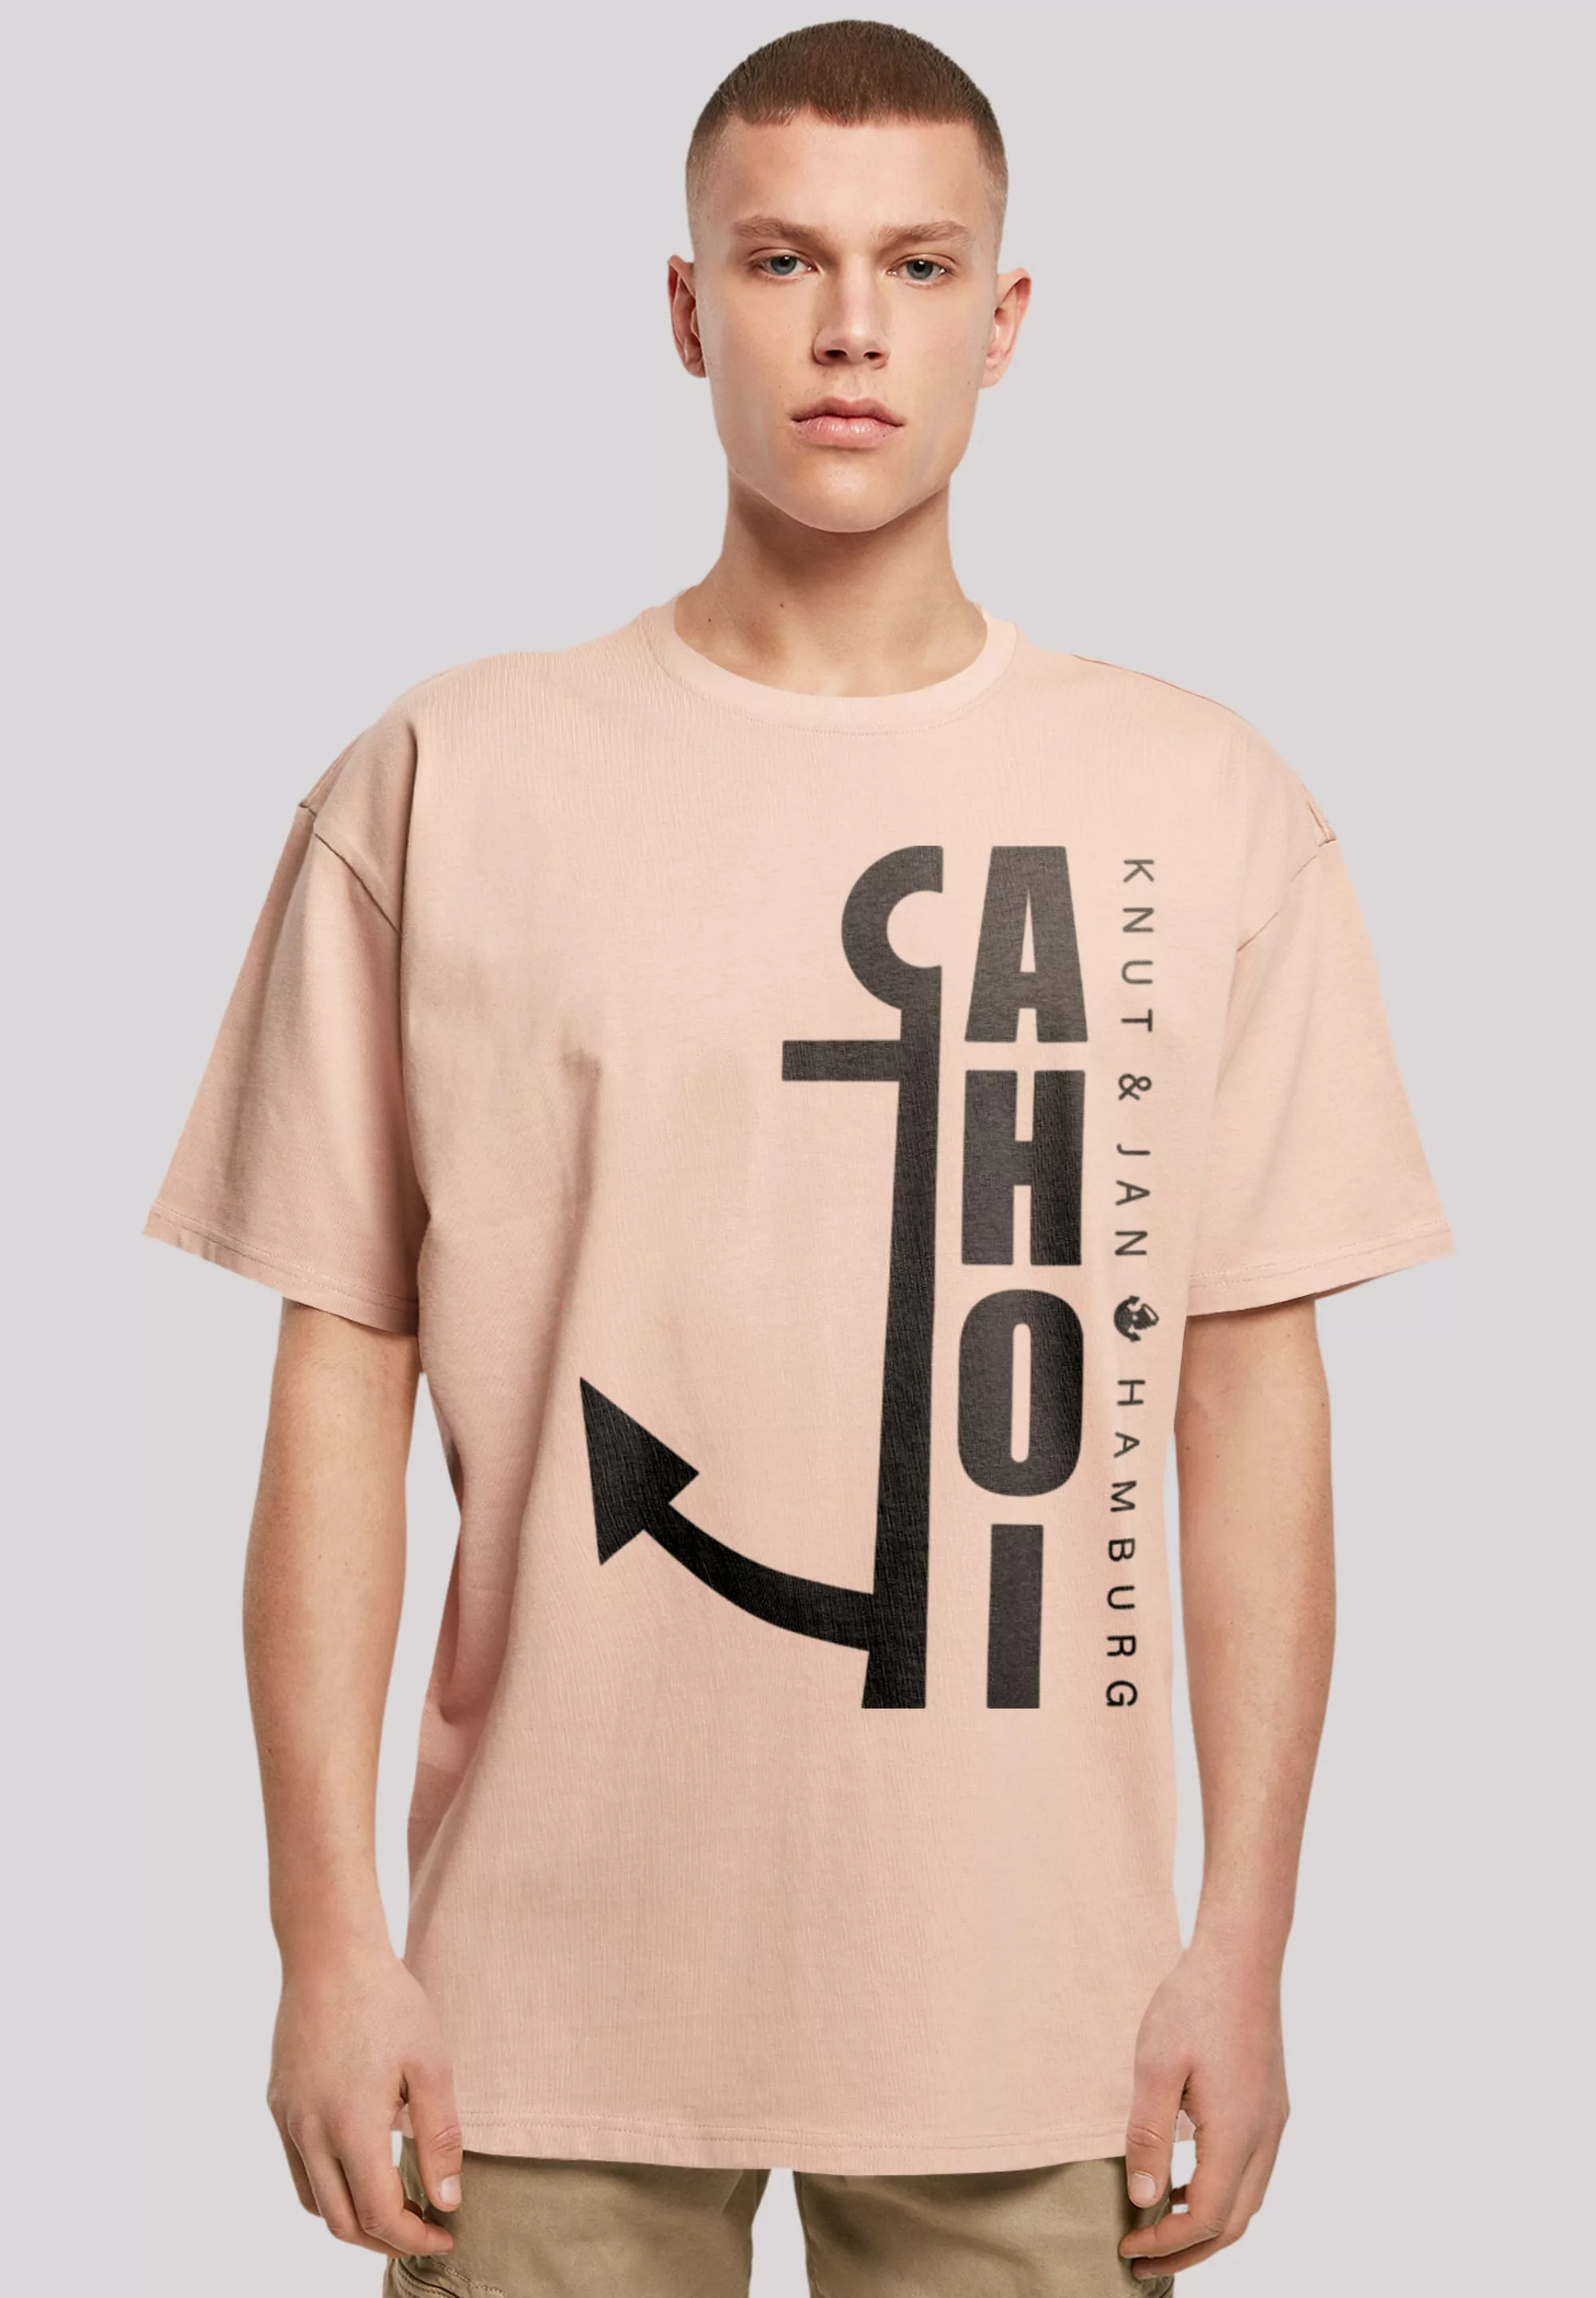 F4NT4STIC T-Shirt "Ahoi Anker Knut & Jan Hamburg", Print günstig online kaufen